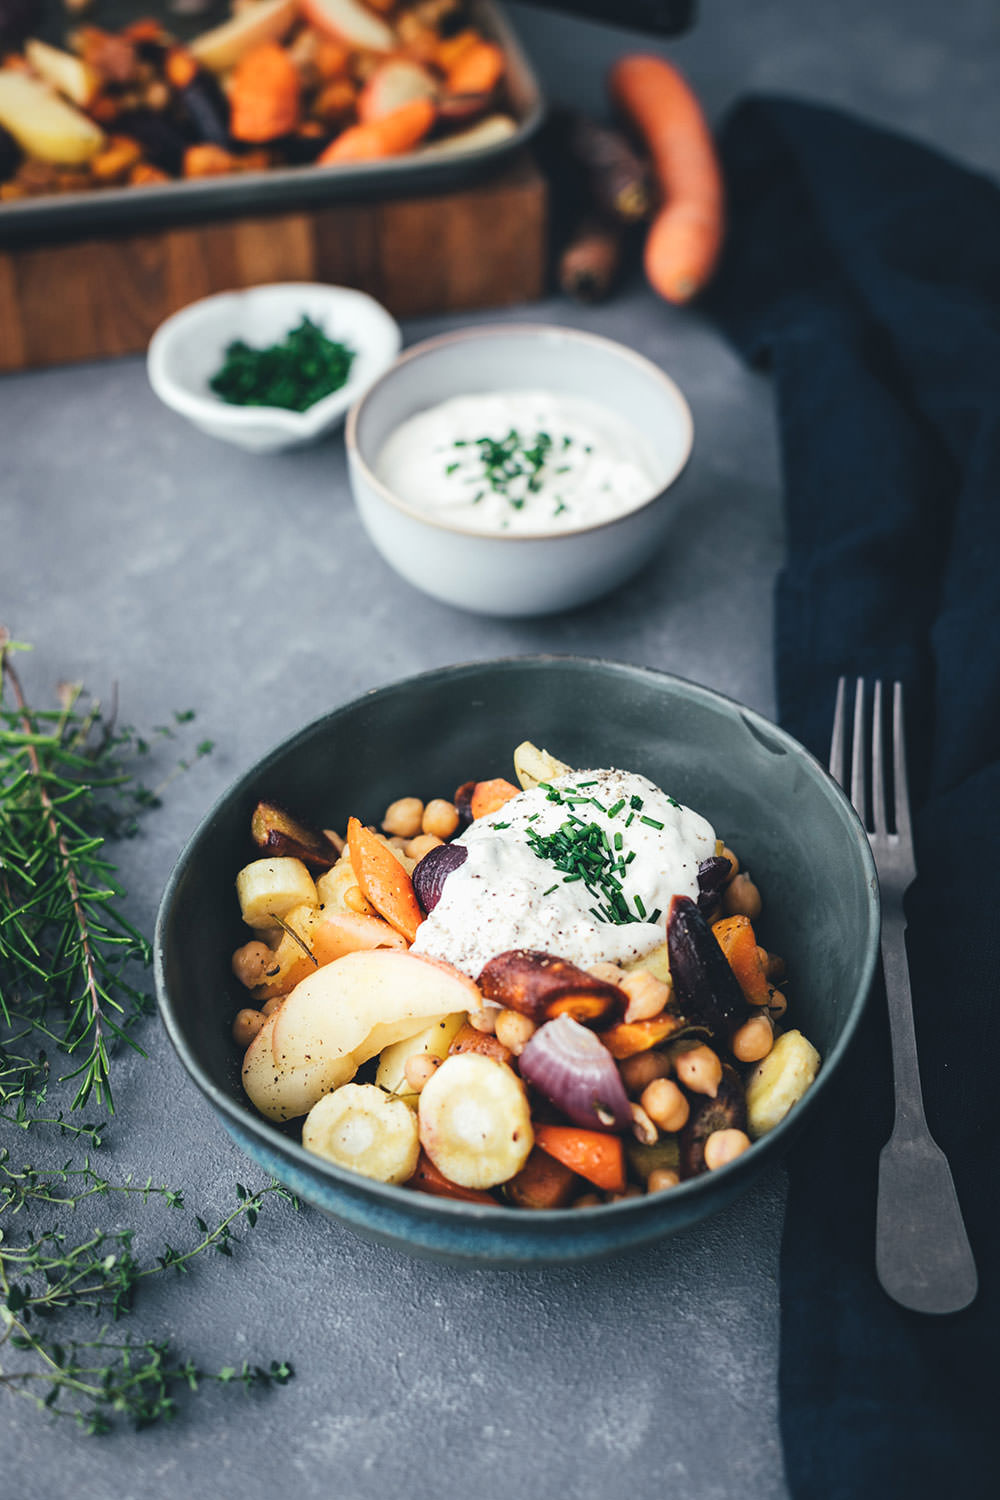 Rezept für herbstliches Ofengemüse mit CAMBOZOLA-Dip | bunte Möhren, Süßkartoffeln und Pastinaken treffen auf Apfel und Kichererbsen und werden mit einem würzigen Blauschimmelkäse-Dip serviert | moeyskitchen.com #ofengemüse #vomblech #sheetpan #onepandinner #vegetarisch #gemüseküche #imherbst #schnellgemacht #rezept #foodblogger